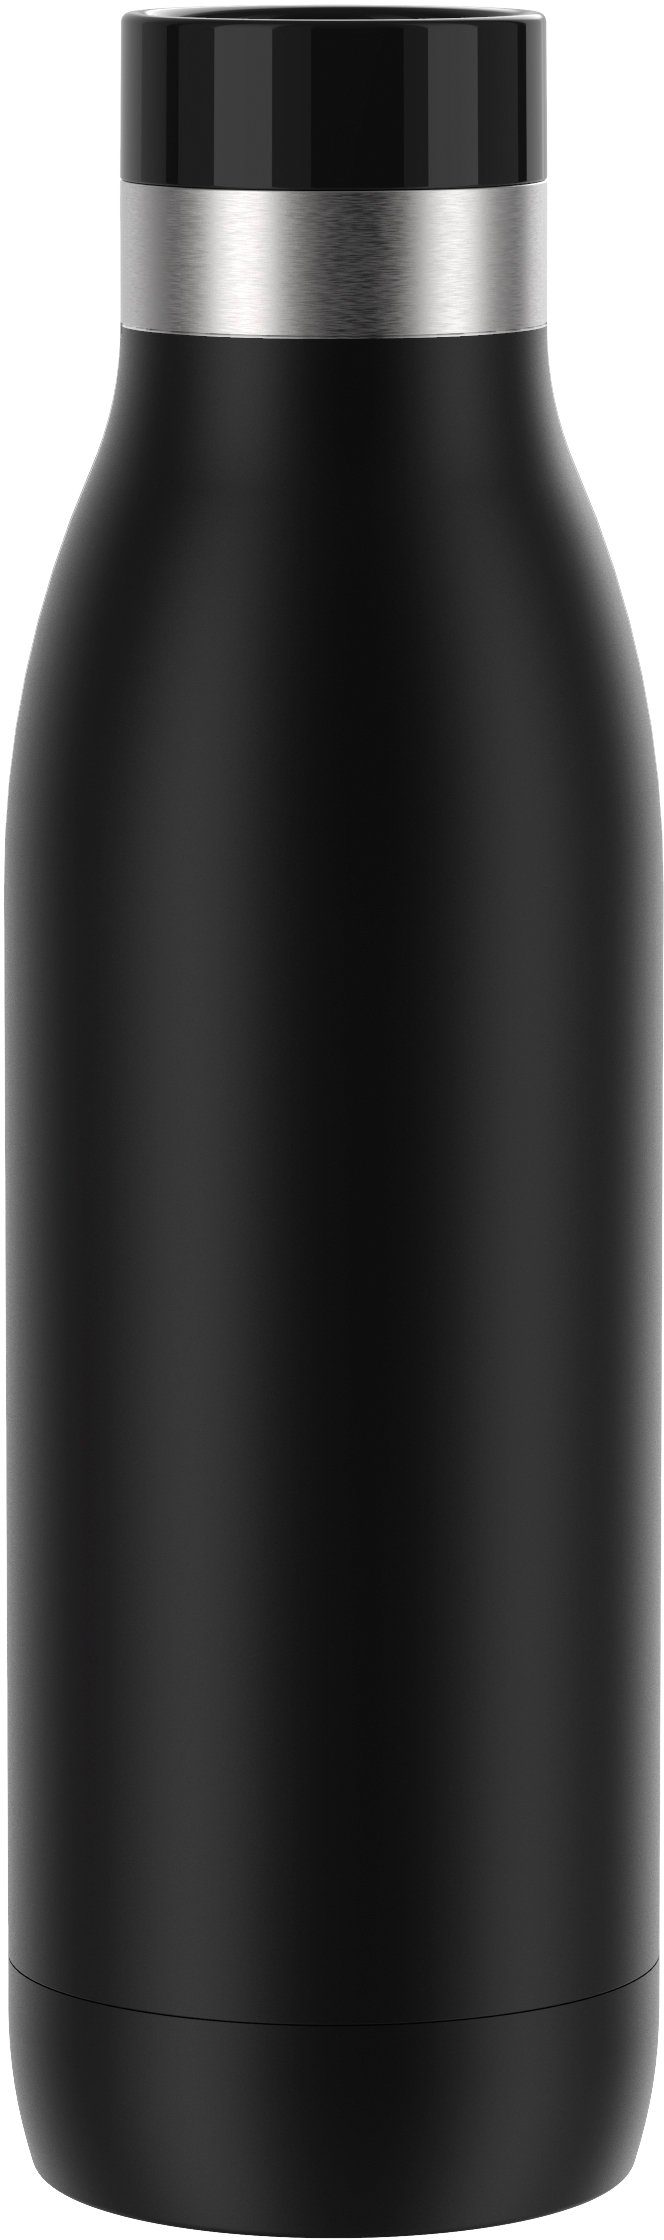 Edelstahl, kühl, Emsa Quick-Press spülmaschinenfest schwarz 12h Trinkflasche Color, Deckel, warm/24h Bludrop